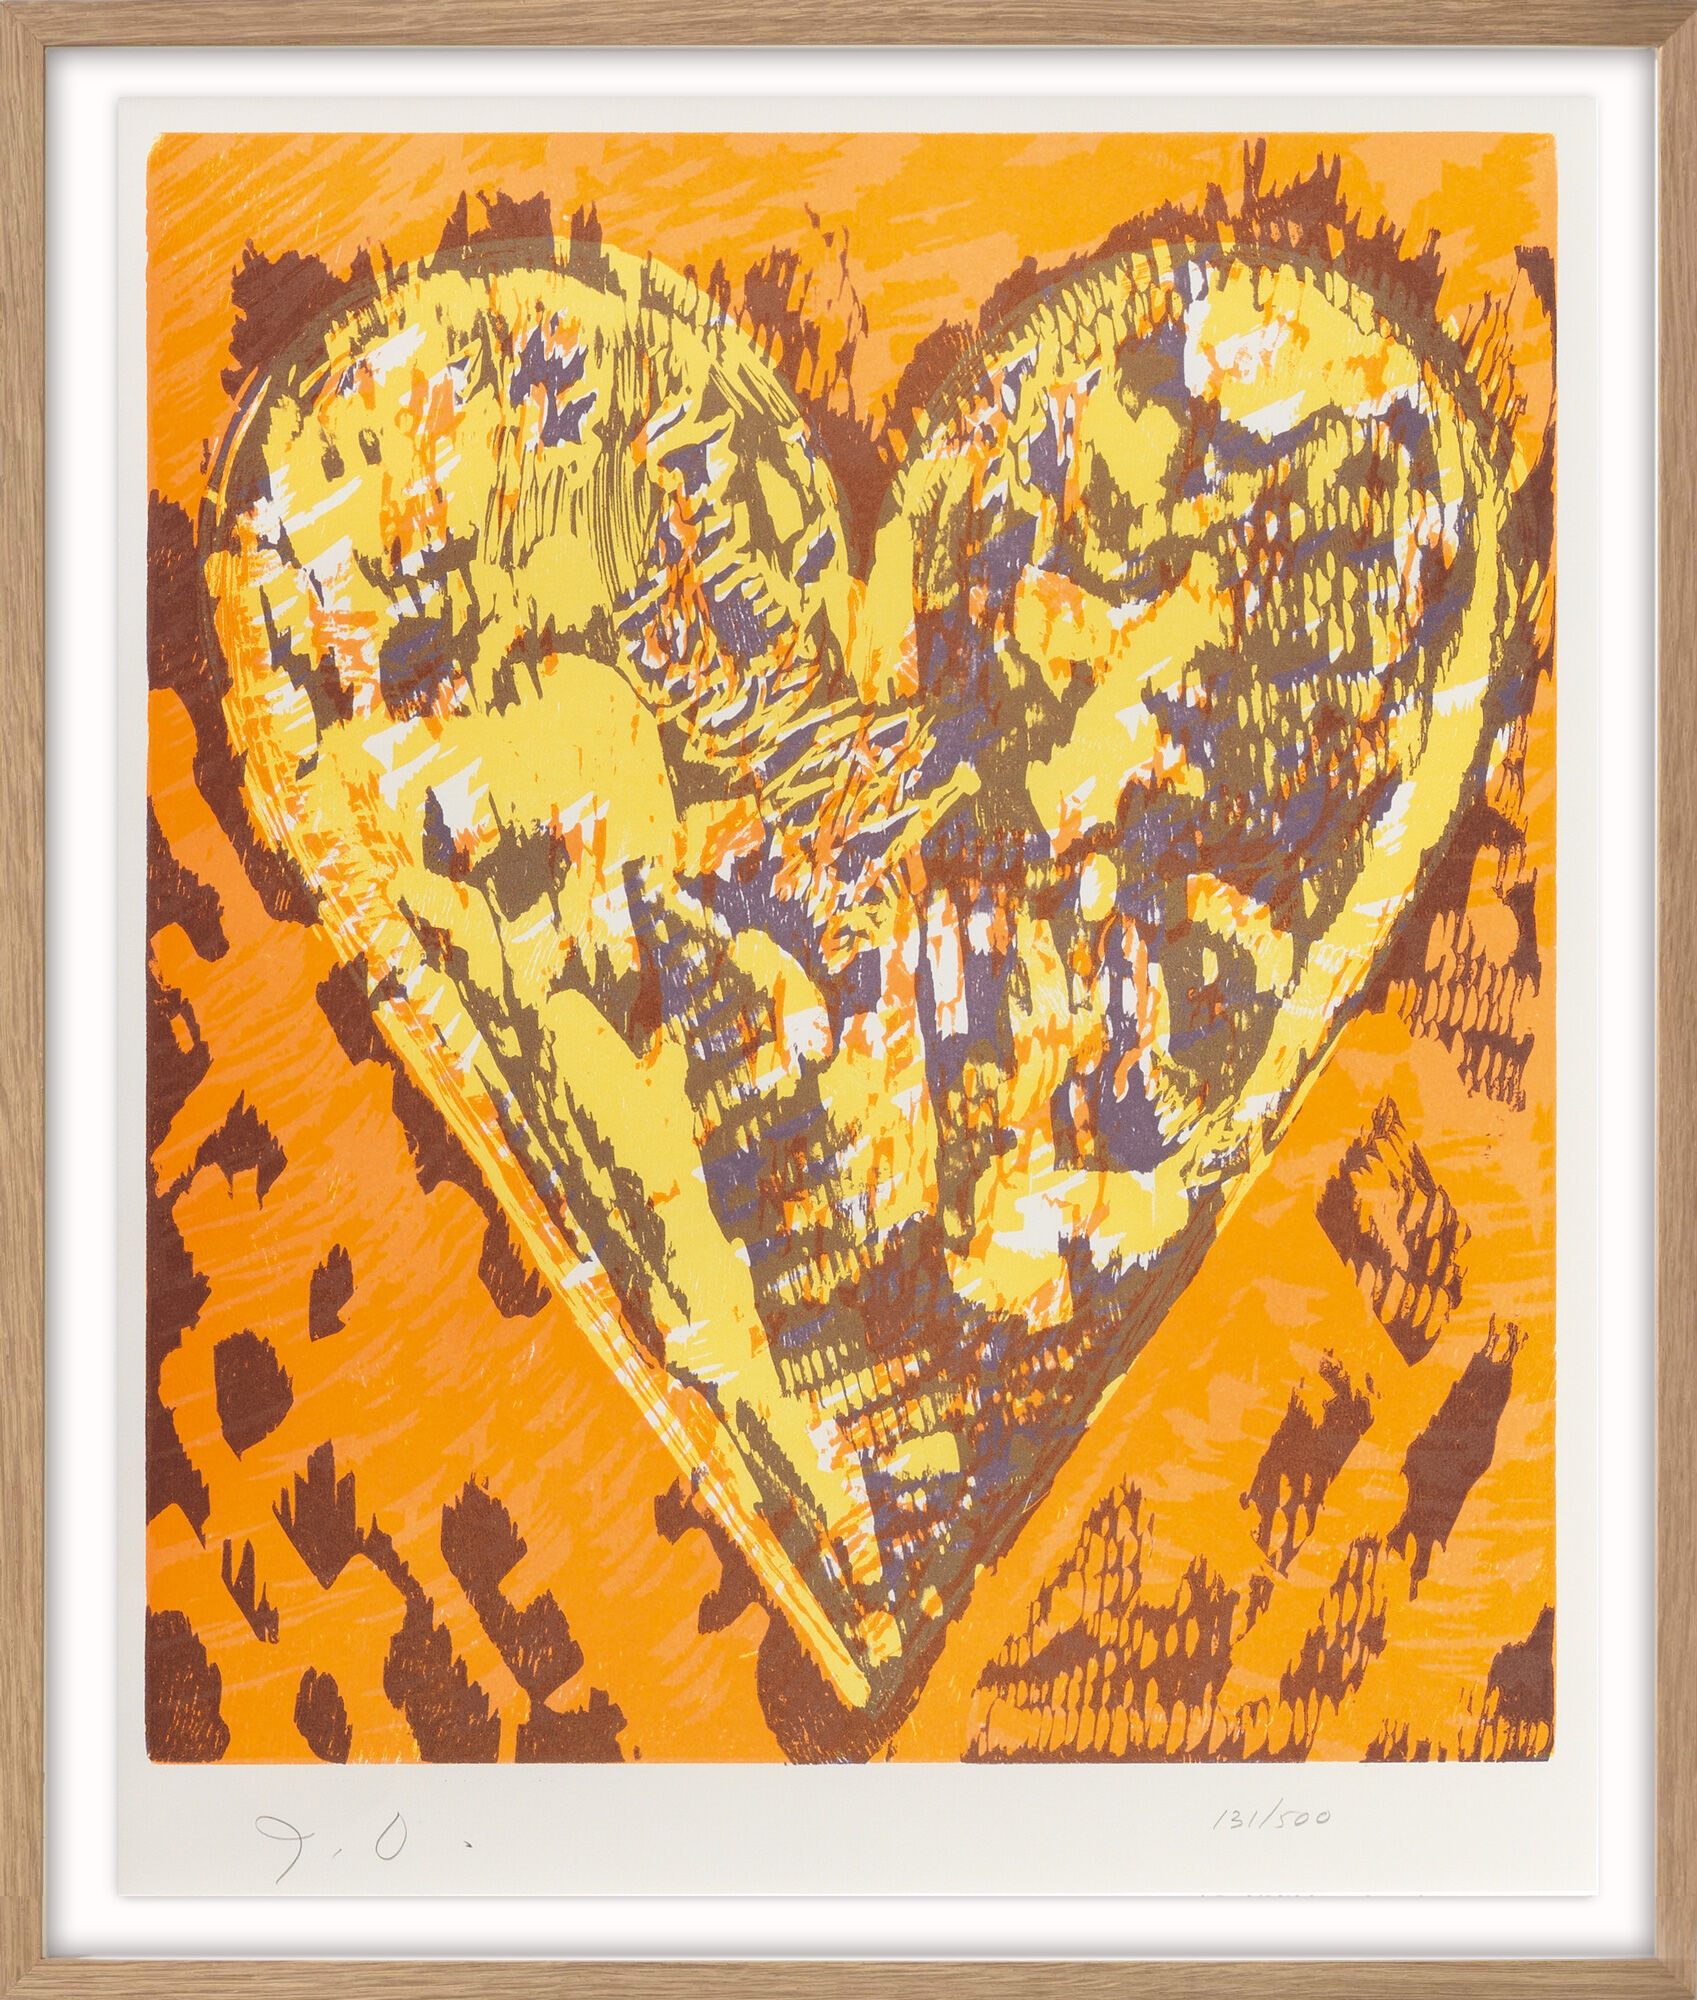 Beeld "Heart" (1993) von Jim Dine